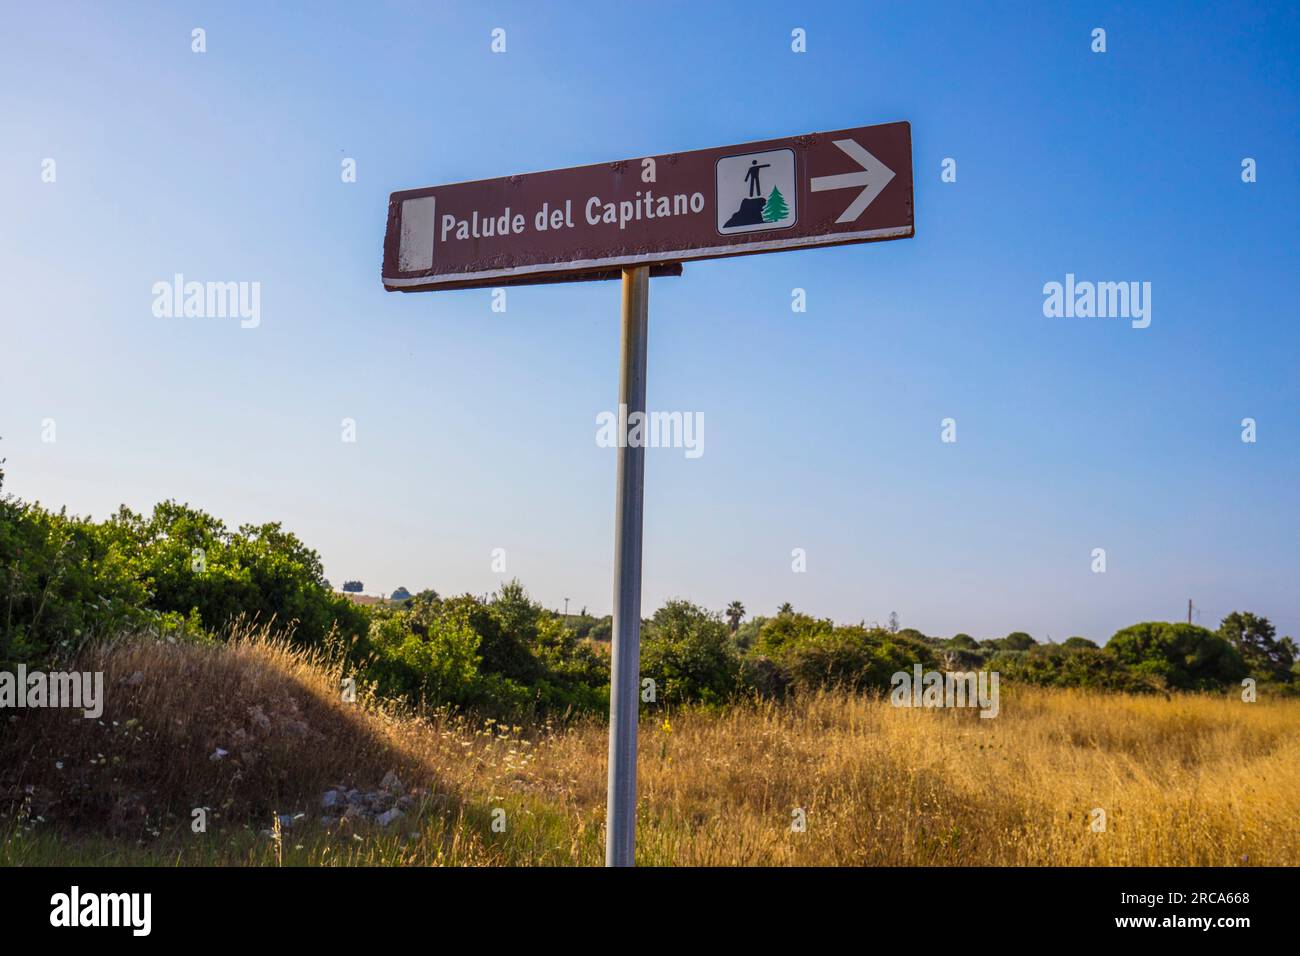 Palude del Capitano, Locality of Santa Caterina, Nardò, Lecce, Puglia, Italy Stock Photo